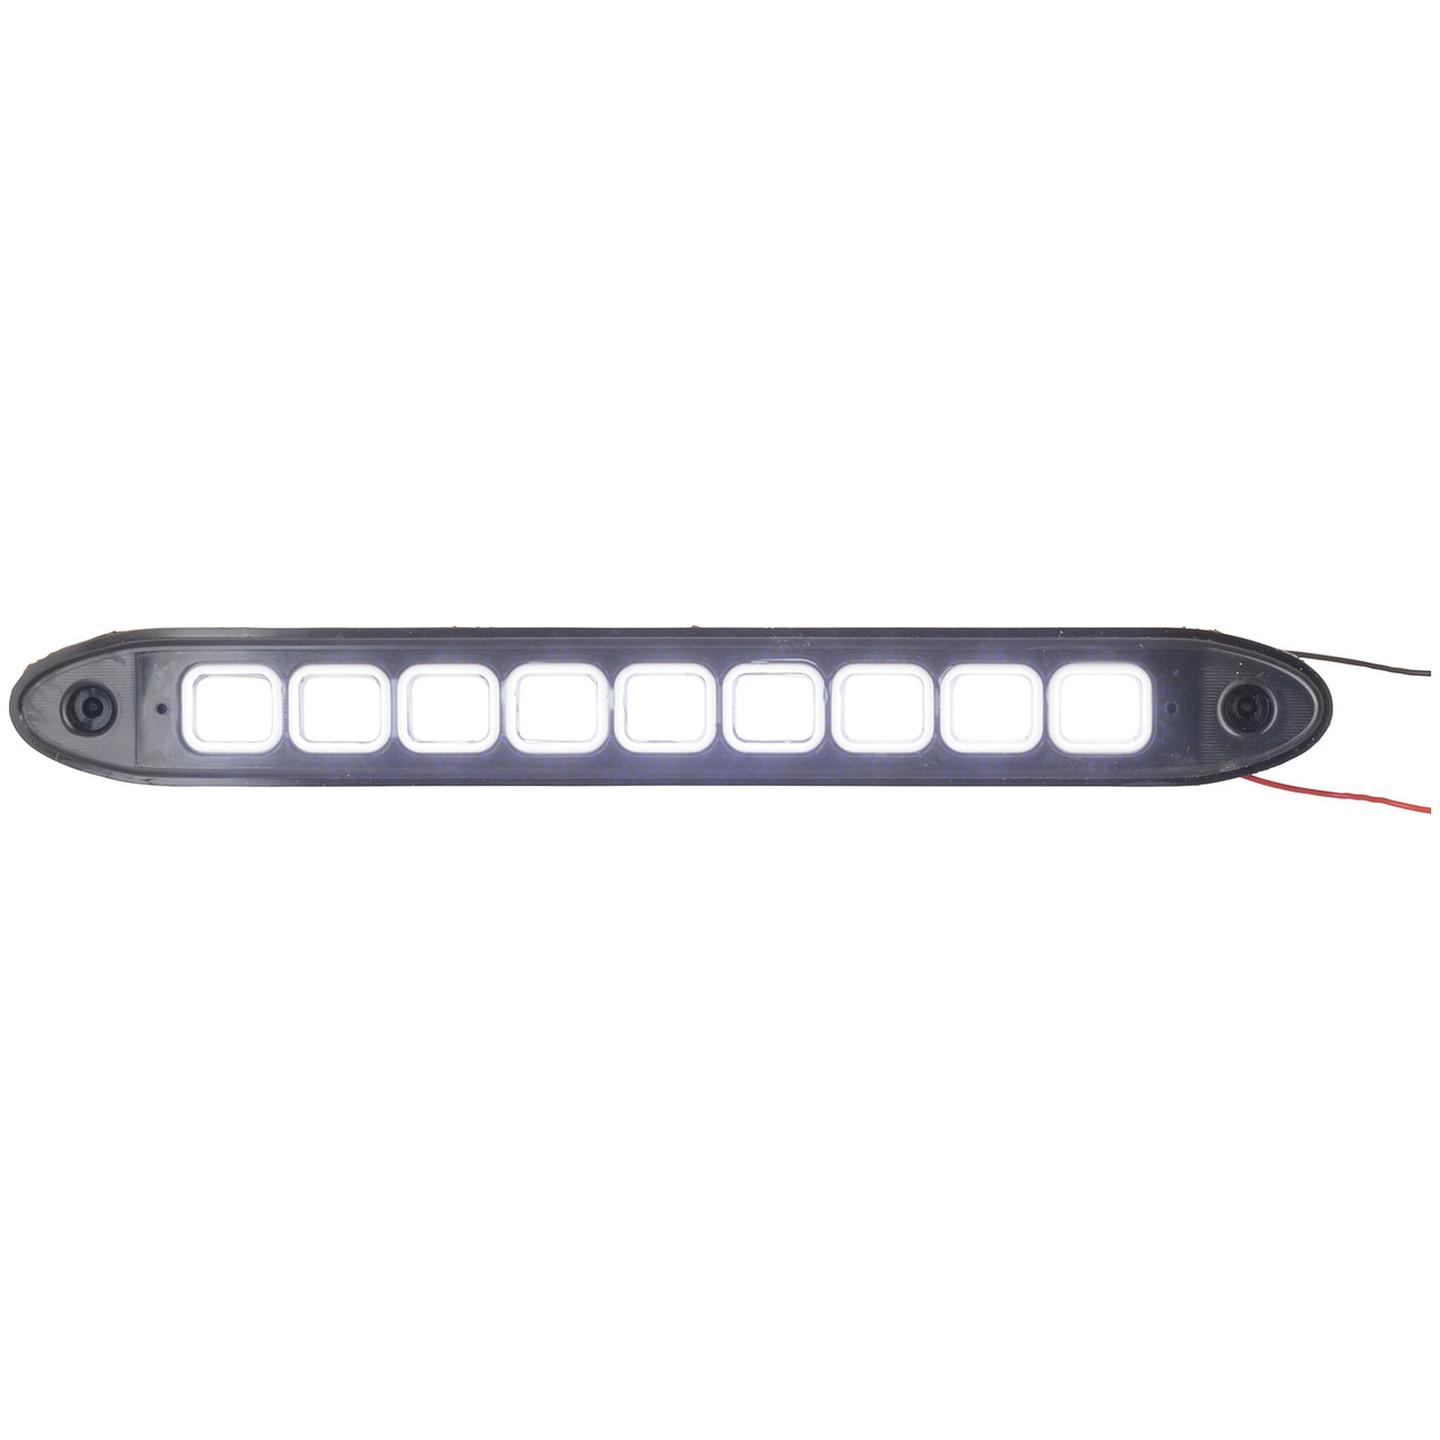 Flexible 12V LED Strip Light Pair